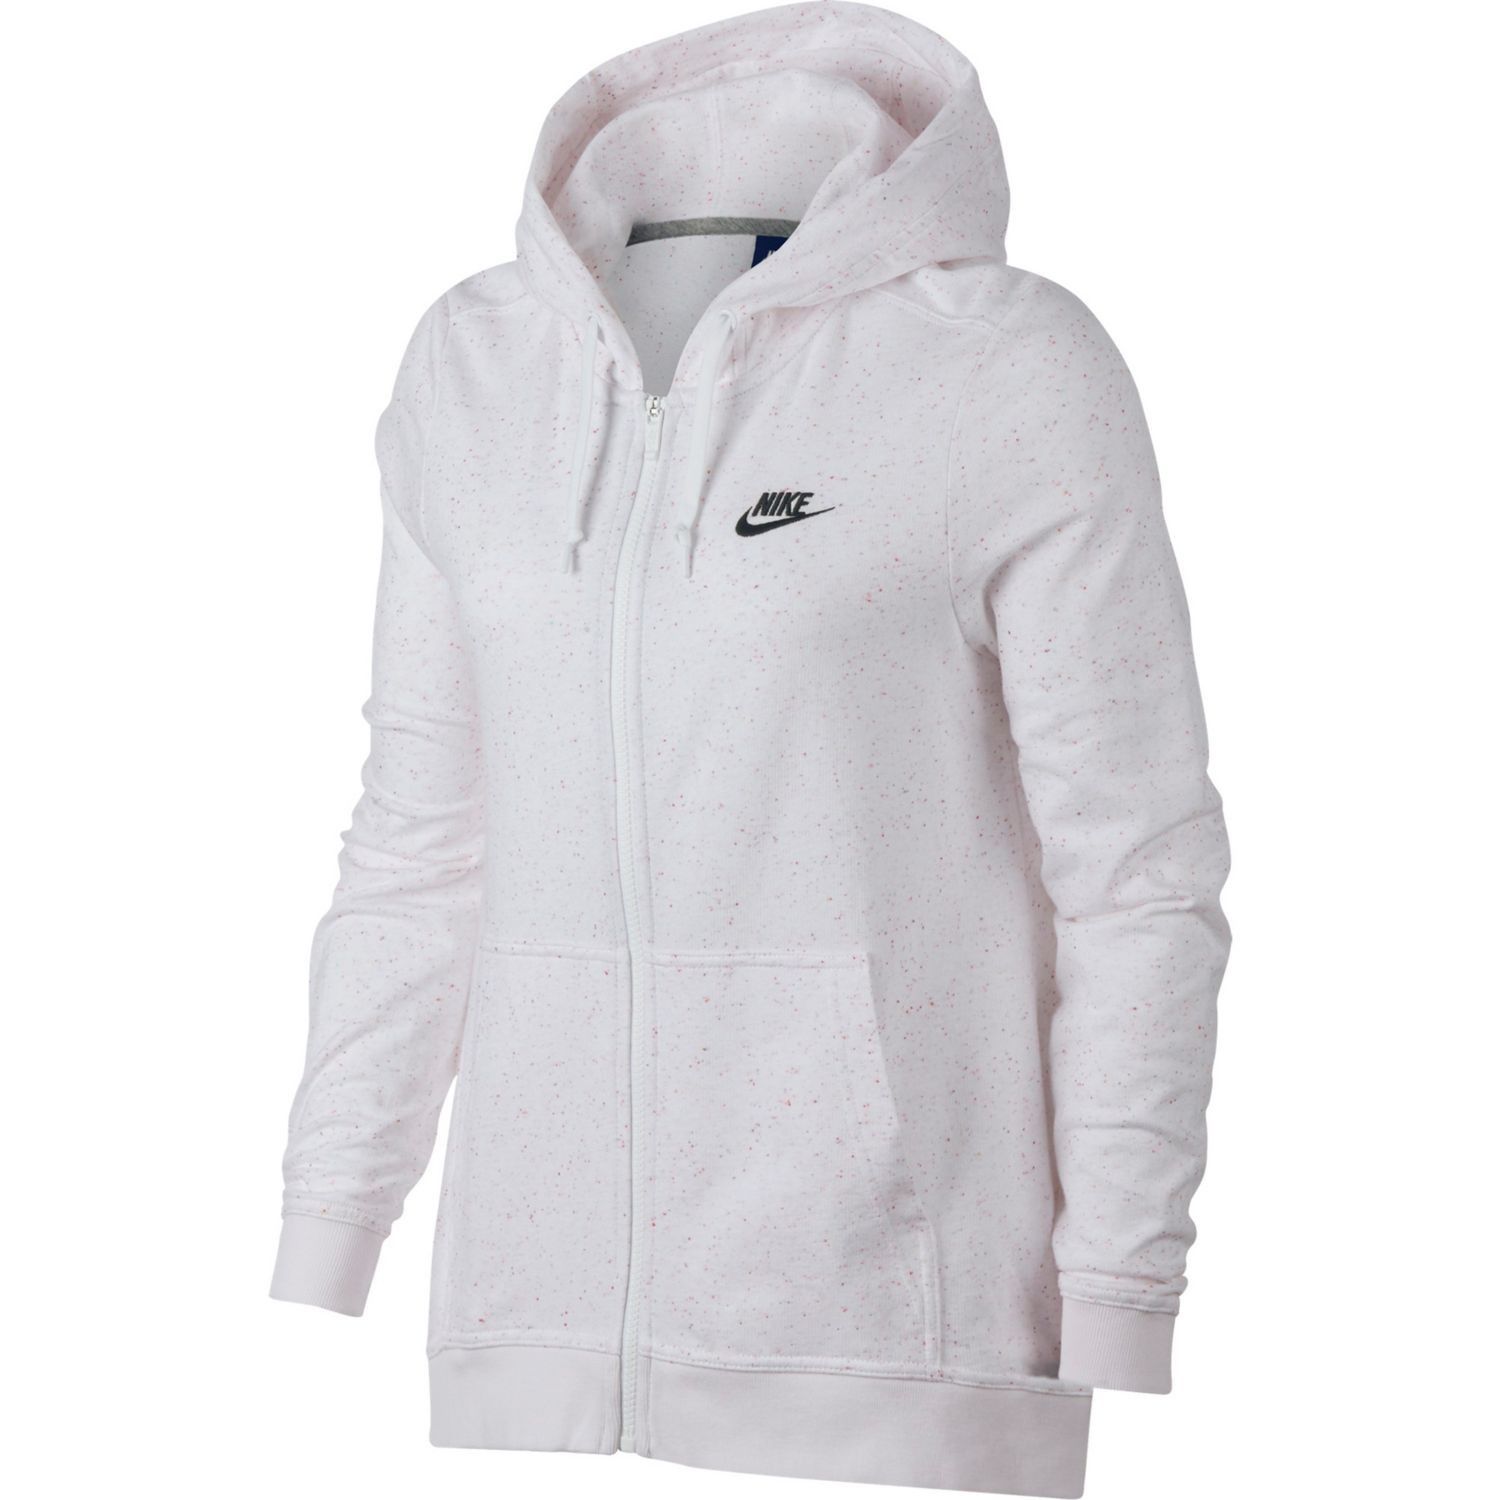 Women's Nike Speckle Fleece Zip-Up Hoodie